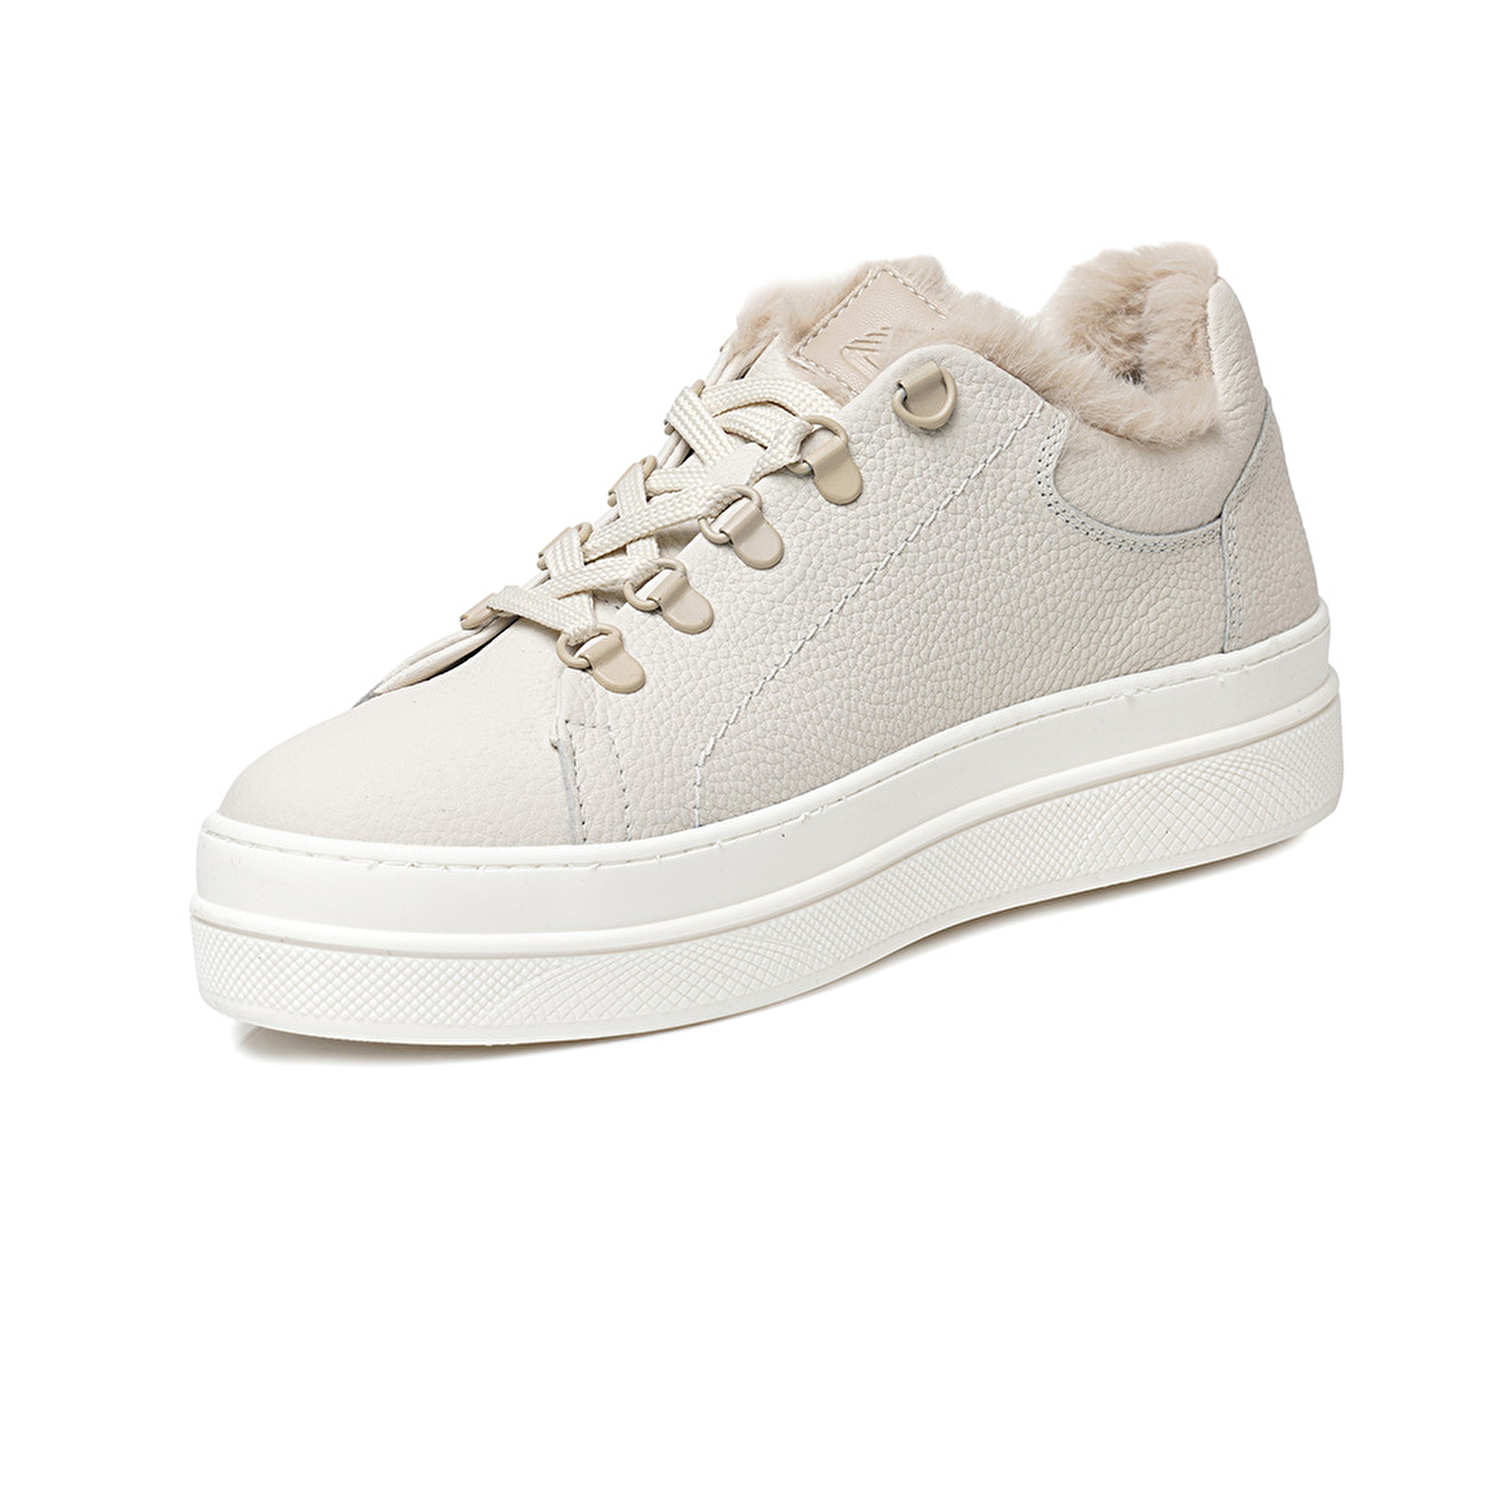 Kadın Kirli Beyaz Hakiki Deri Sneaker Ayakkabı 3K2SA33070-3